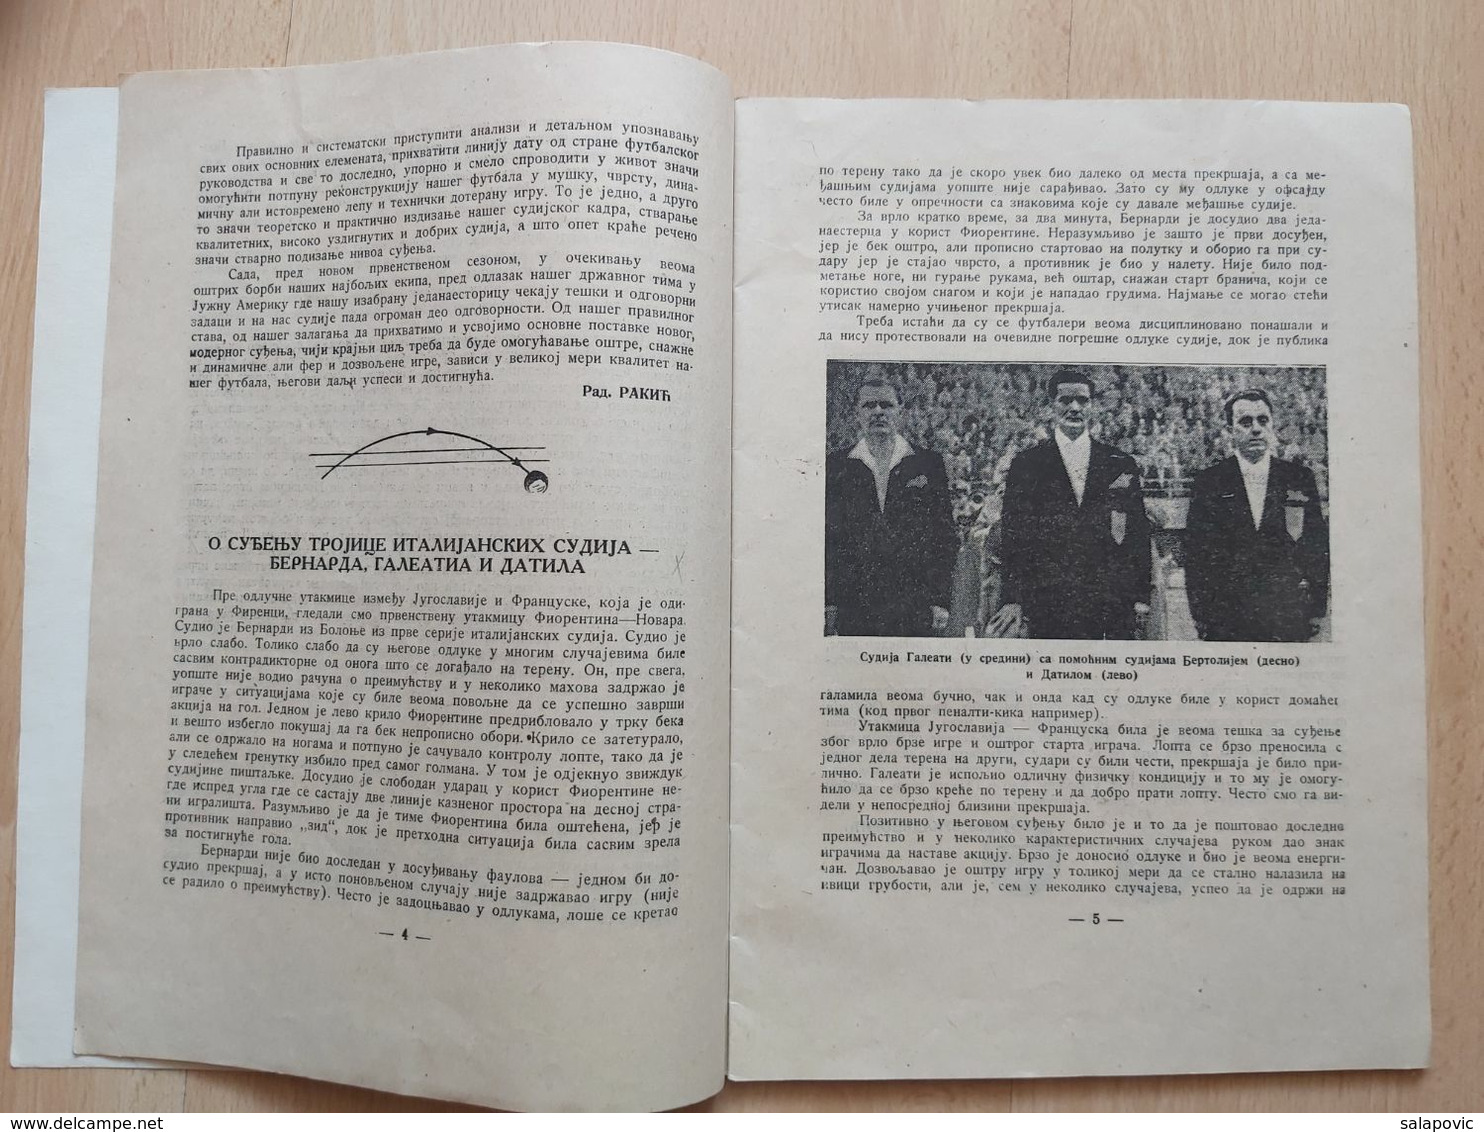 Fudbalski Sudija Br.1, 1950 - Libri